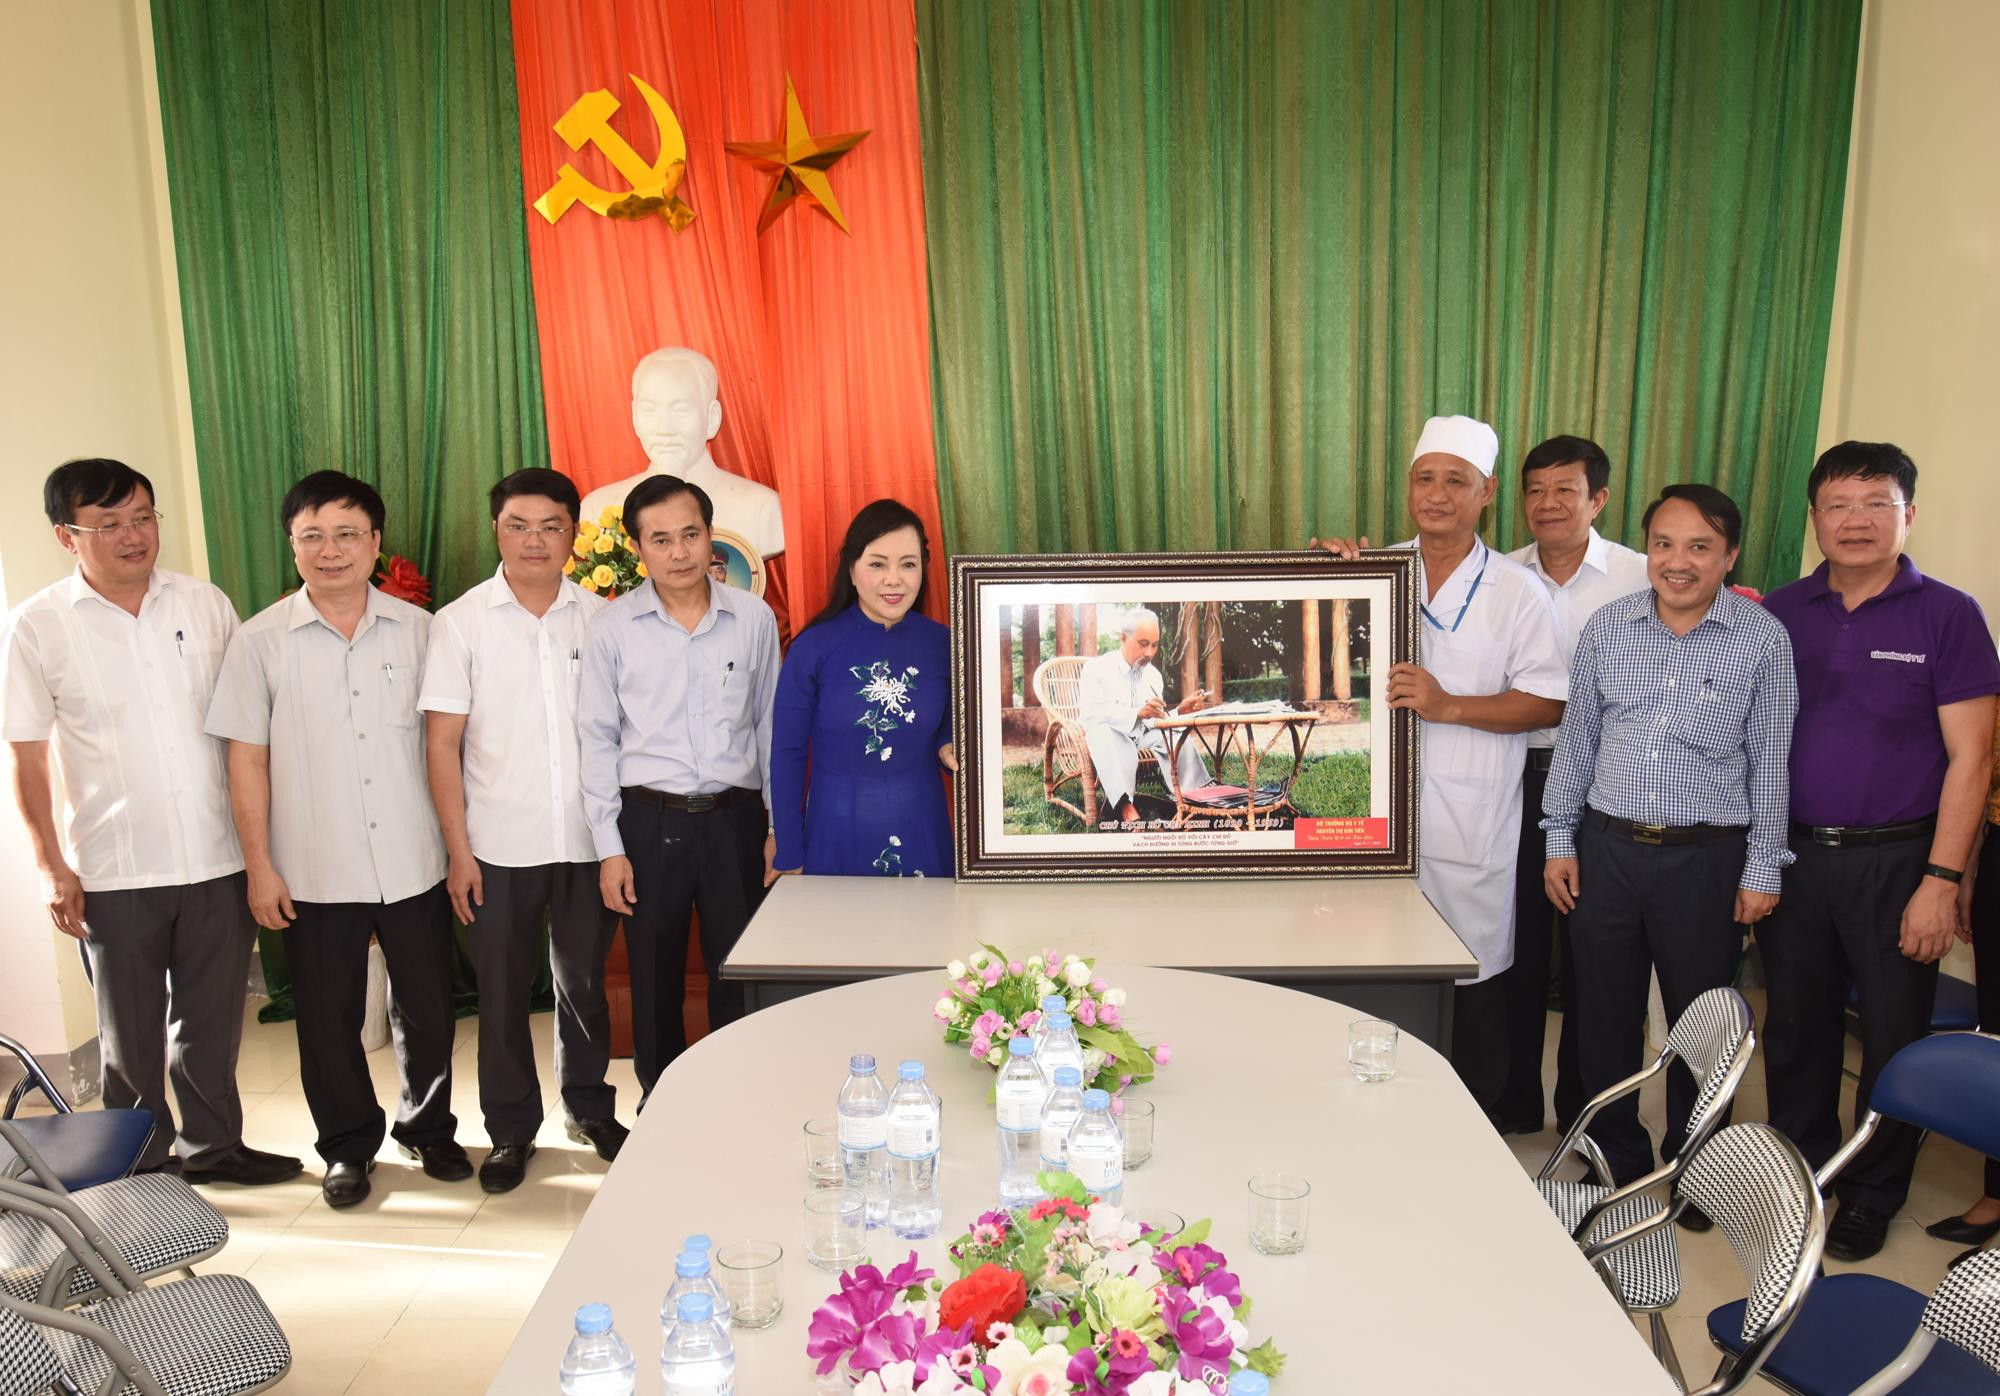 Bộ trưởng Bộ Y tế tặng bức tranh Chủ tịch Hồ Chí Minh cho trạm y tế xã Kim Liên. Ảnh: Từ Thành